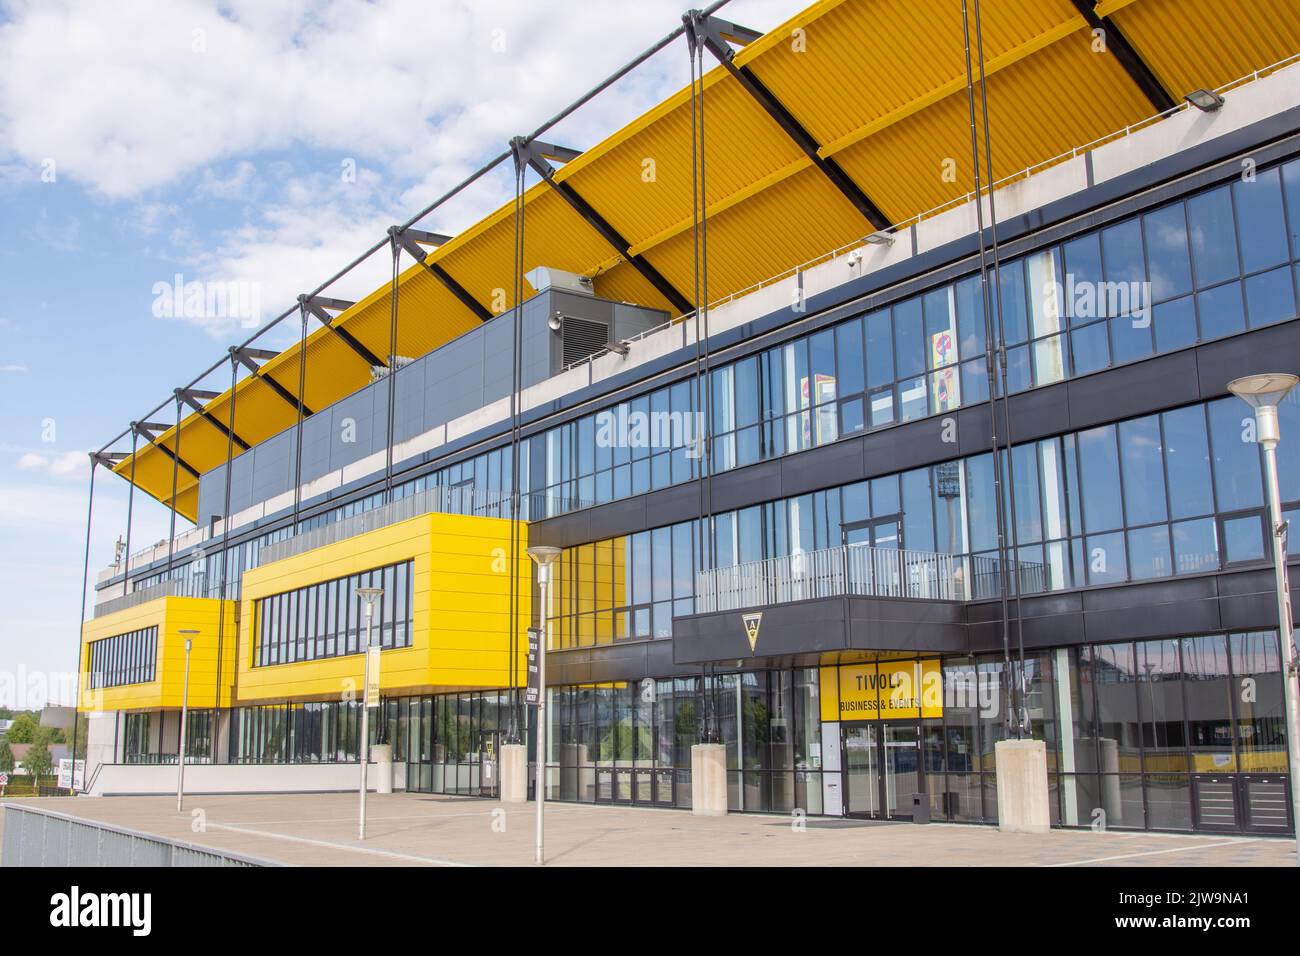 Aachen september 2022: Alemannia Aachen's Tivoli football stadium Stock Photo